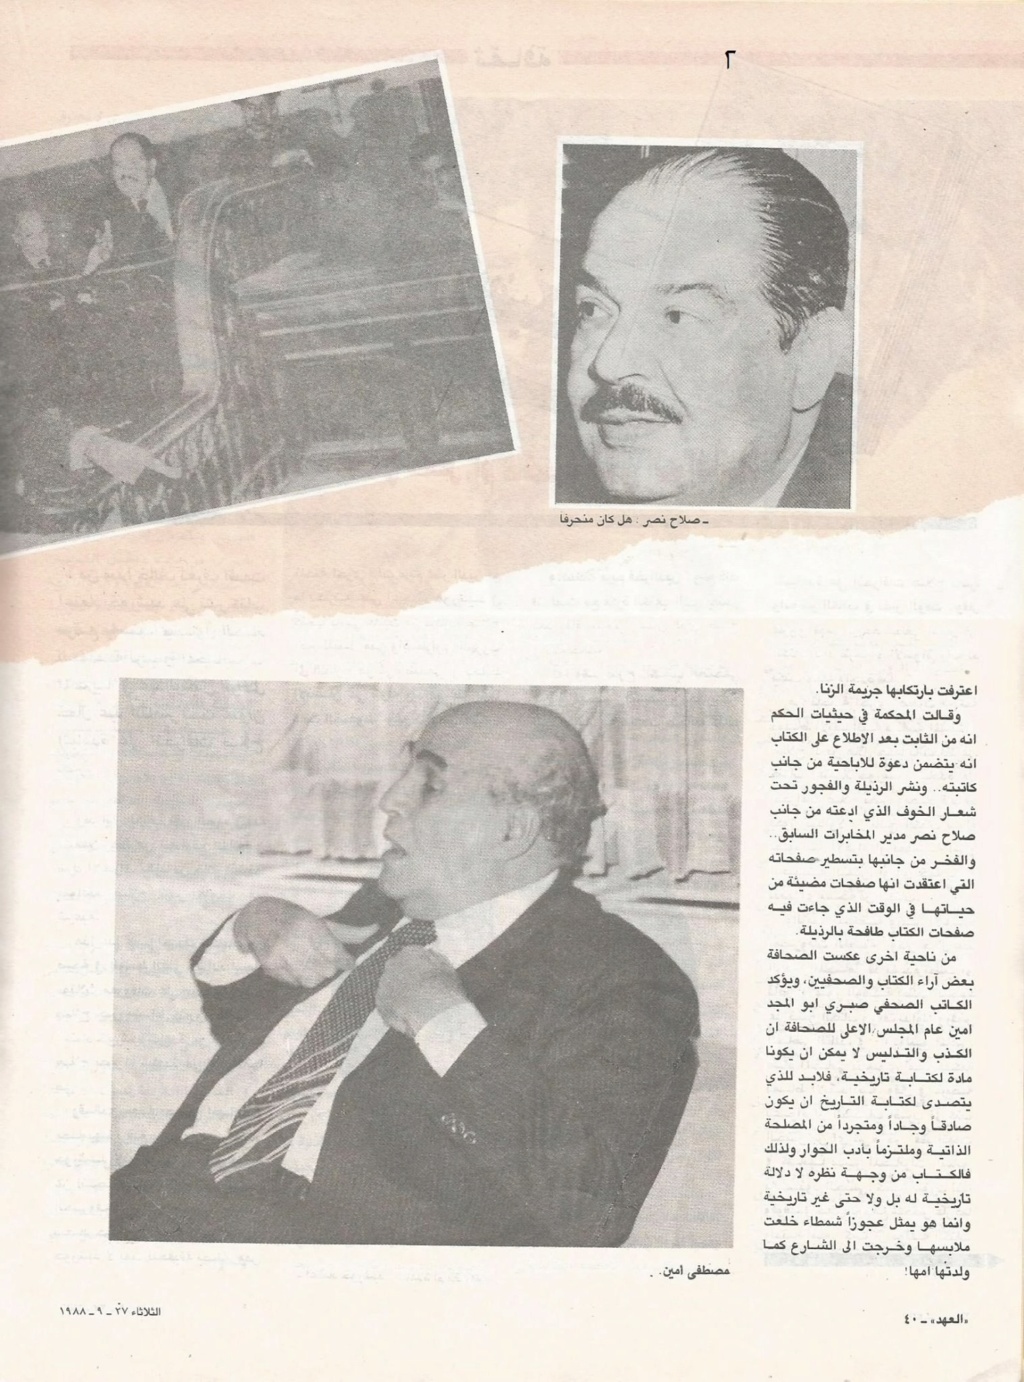 مقال صحفي : سعاد حسني ترفع دعوى ضد اعتماد خورشيد 1988 م 2225